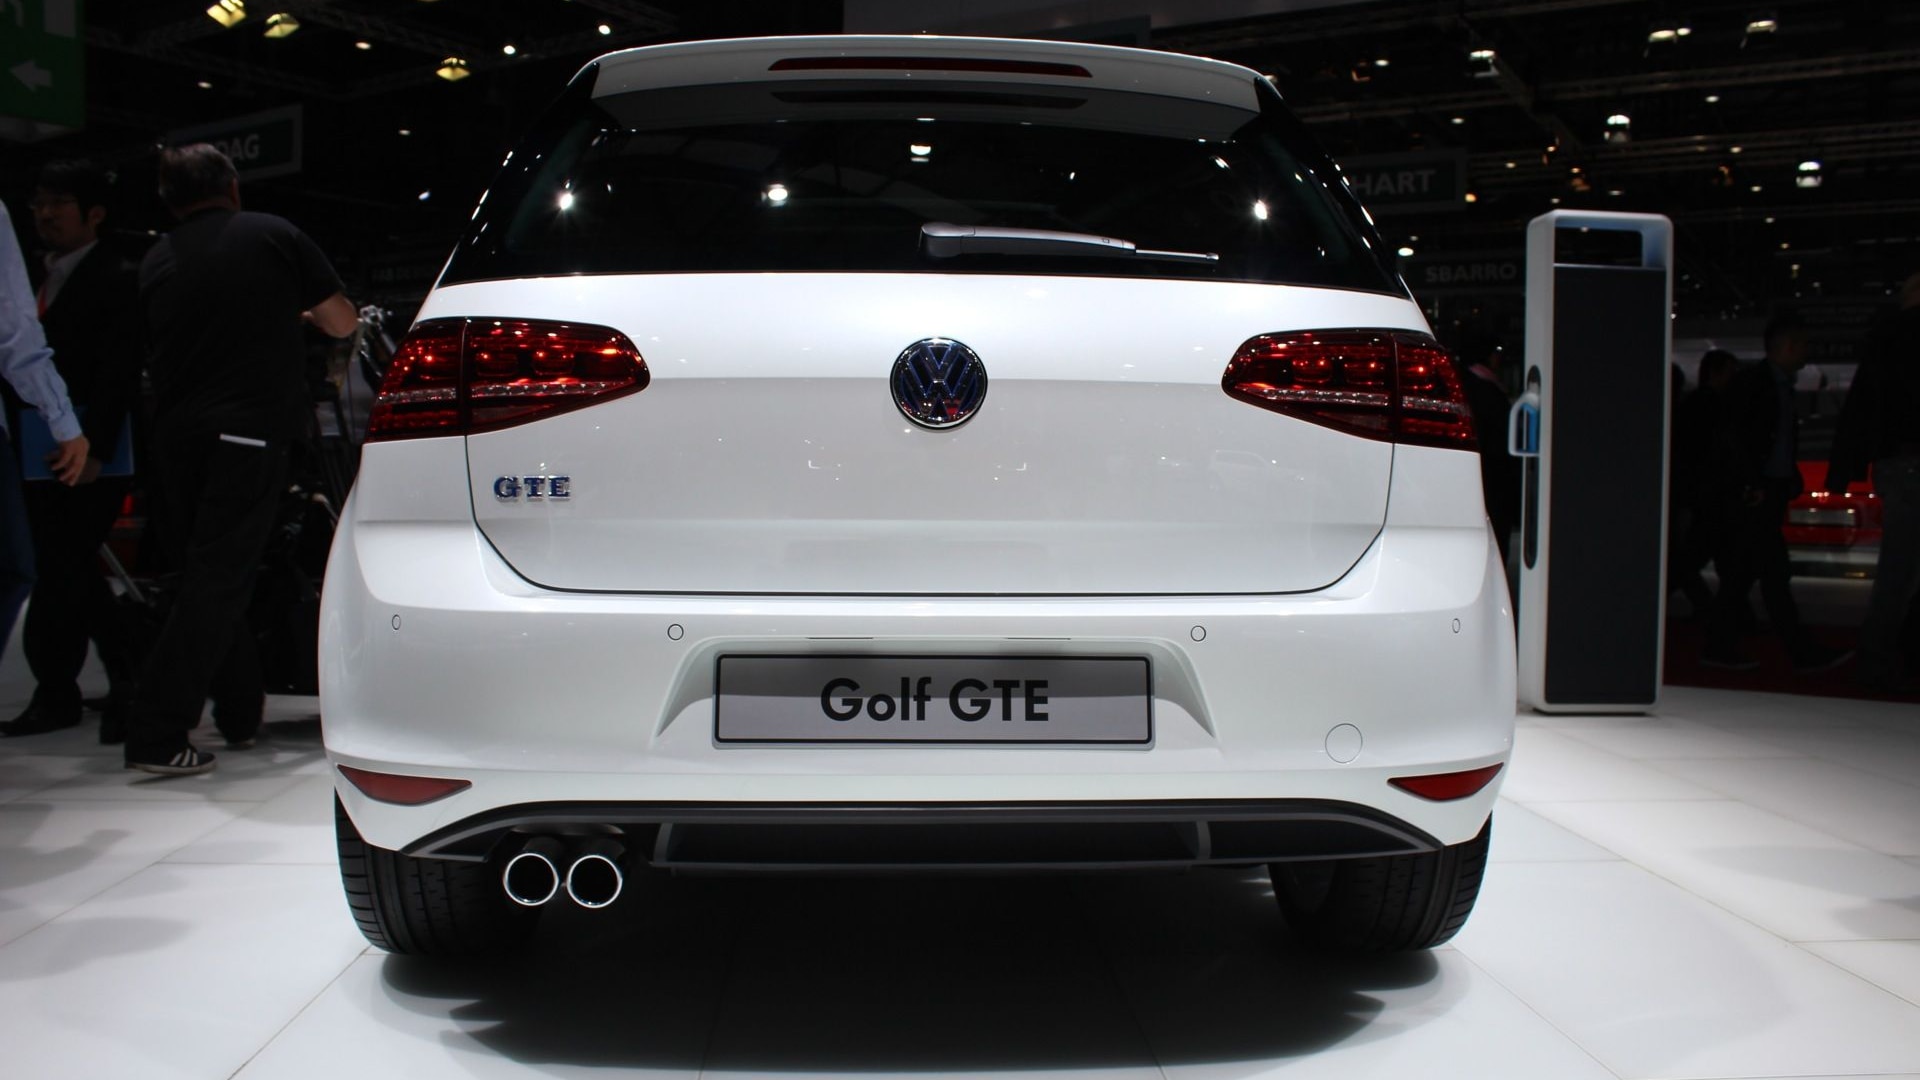 Volkswagen Golf GTE Plug-In Hybrid: Live Photos From Geneva